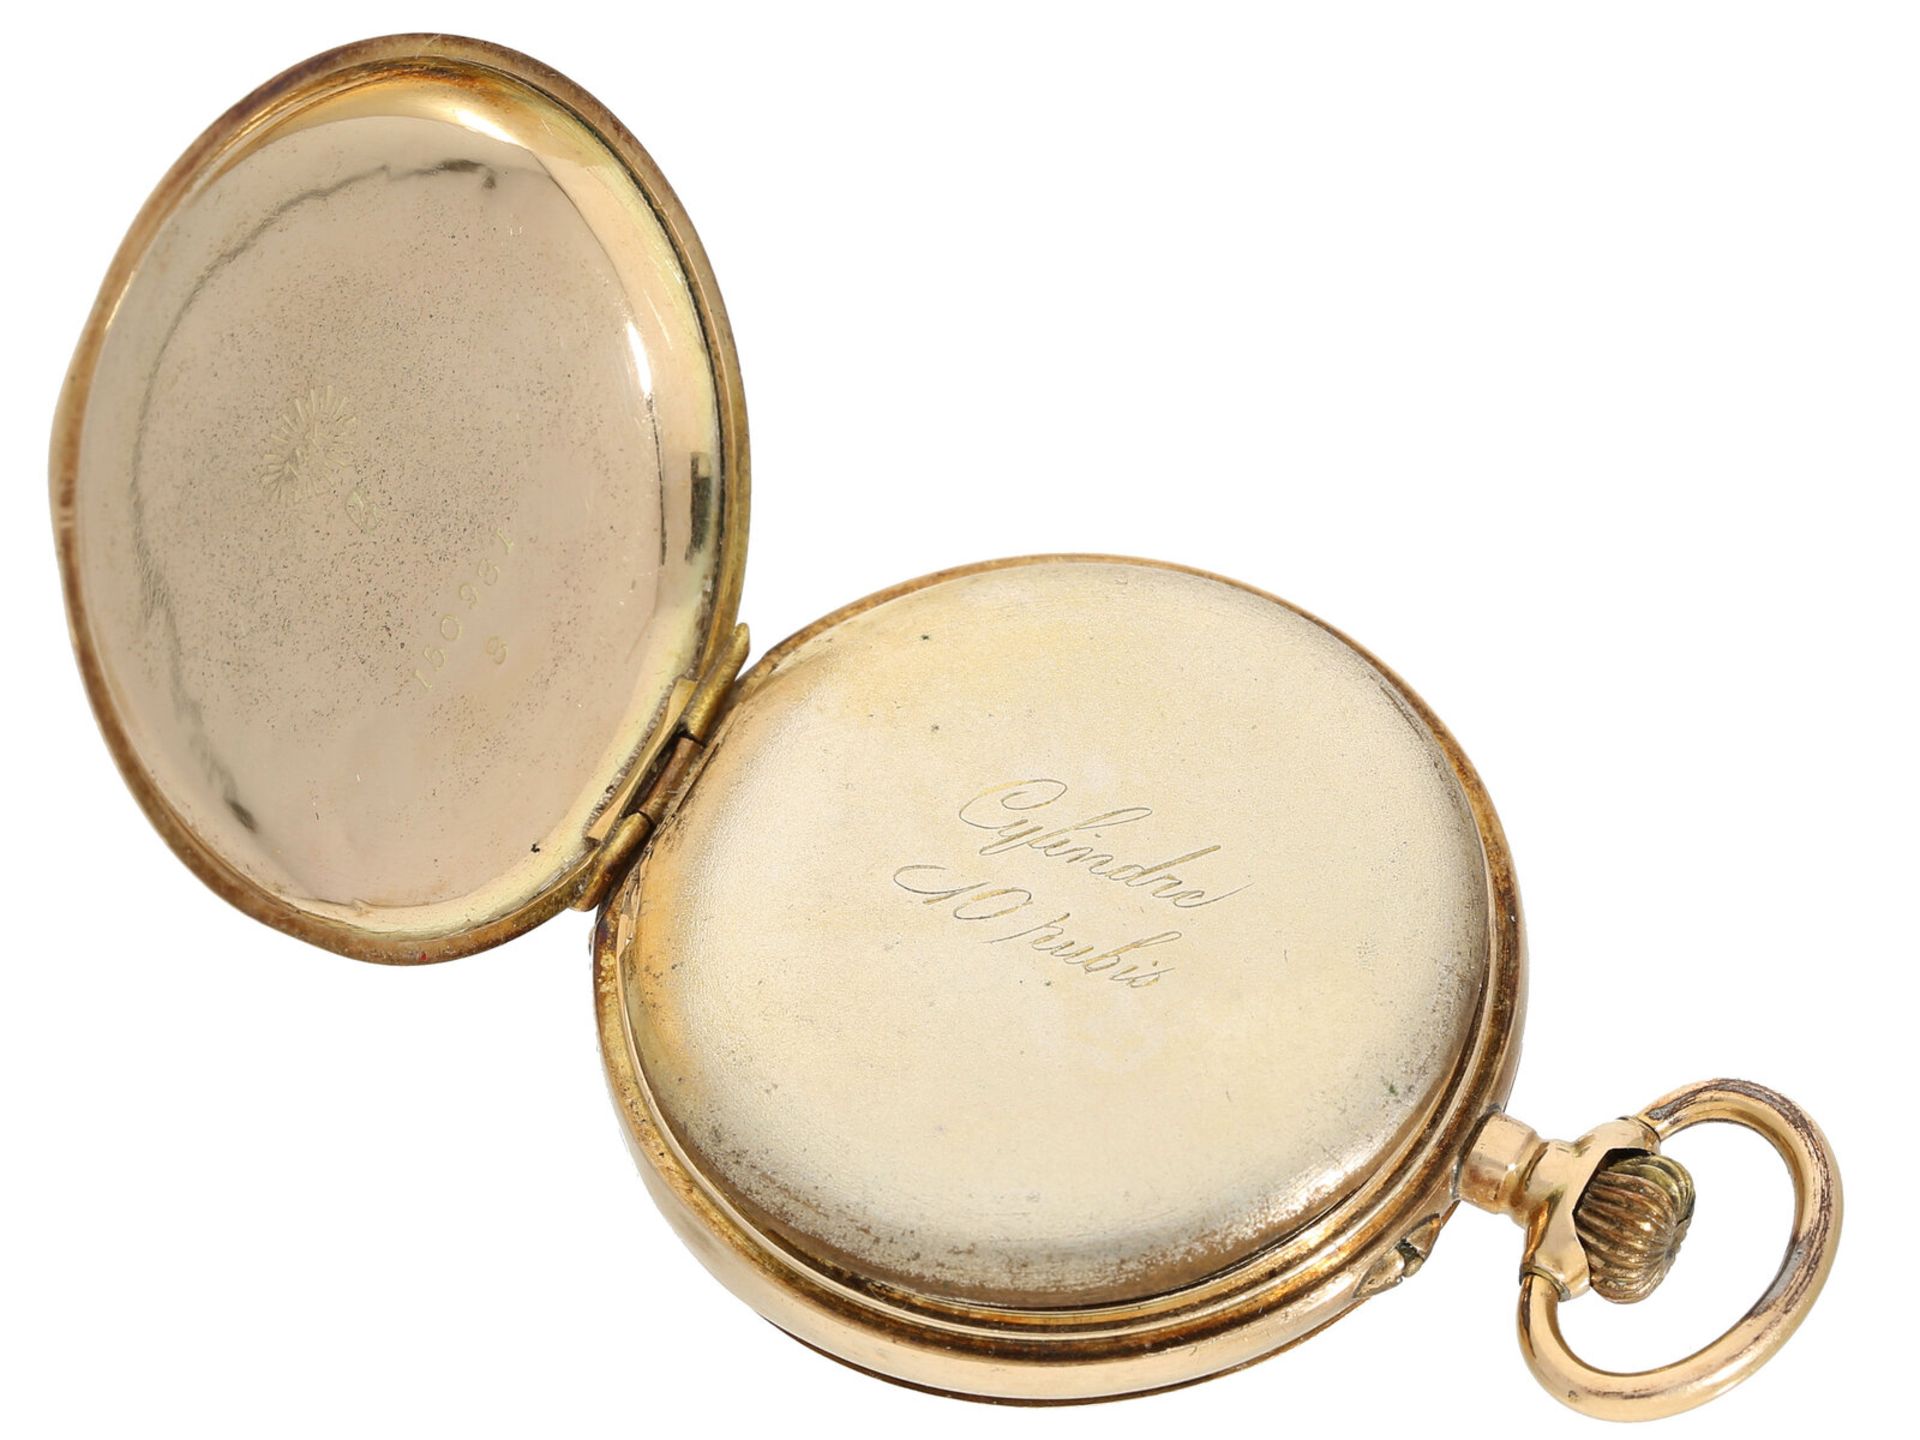 Taschenuhr: goldene Damenuhr mit sehr schöner Emaille-Dekoration, um 1900 - Bild 3 aus 4